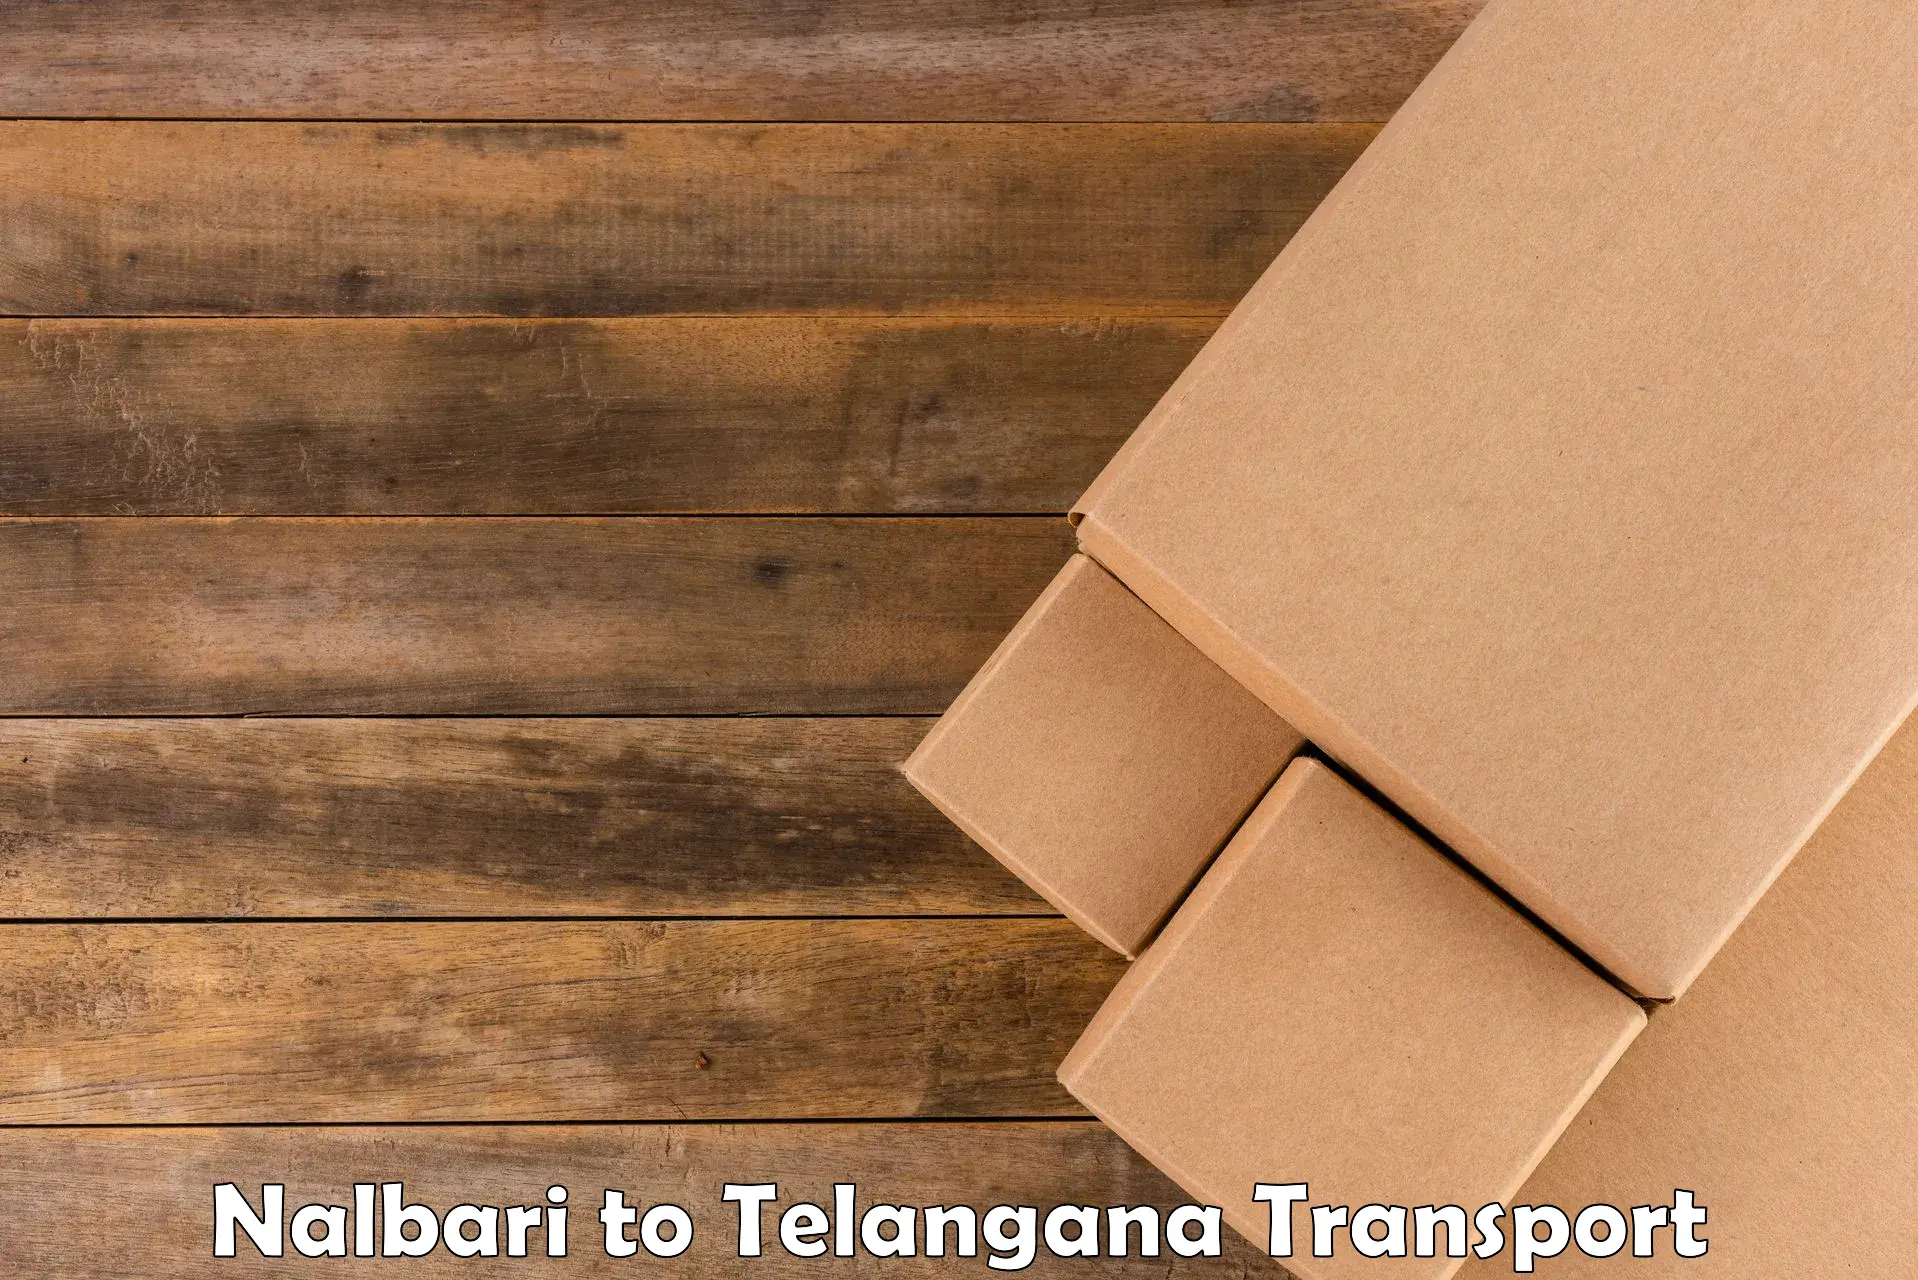 Furniture transport service Nalbari to Kakeshwaram